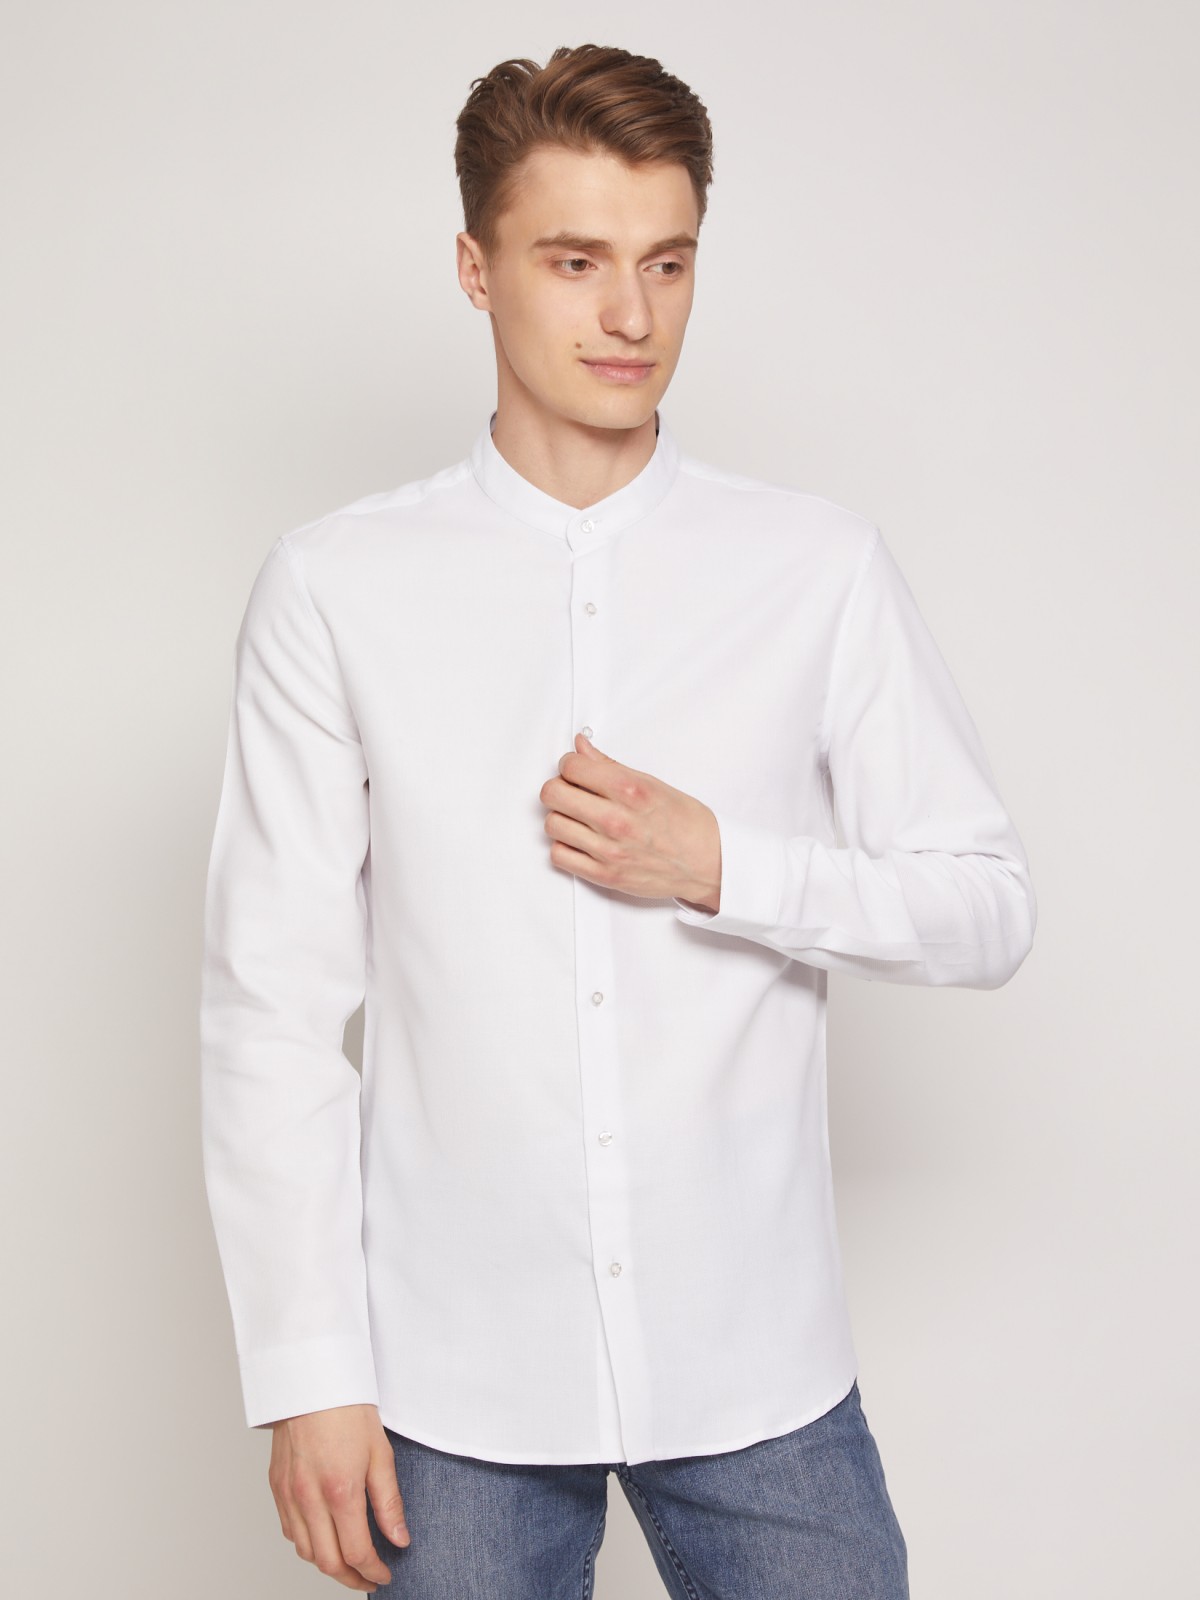 Рубашка с воротником-стойкой zolla 011322159053, цвет белый, размер XS - фото 4